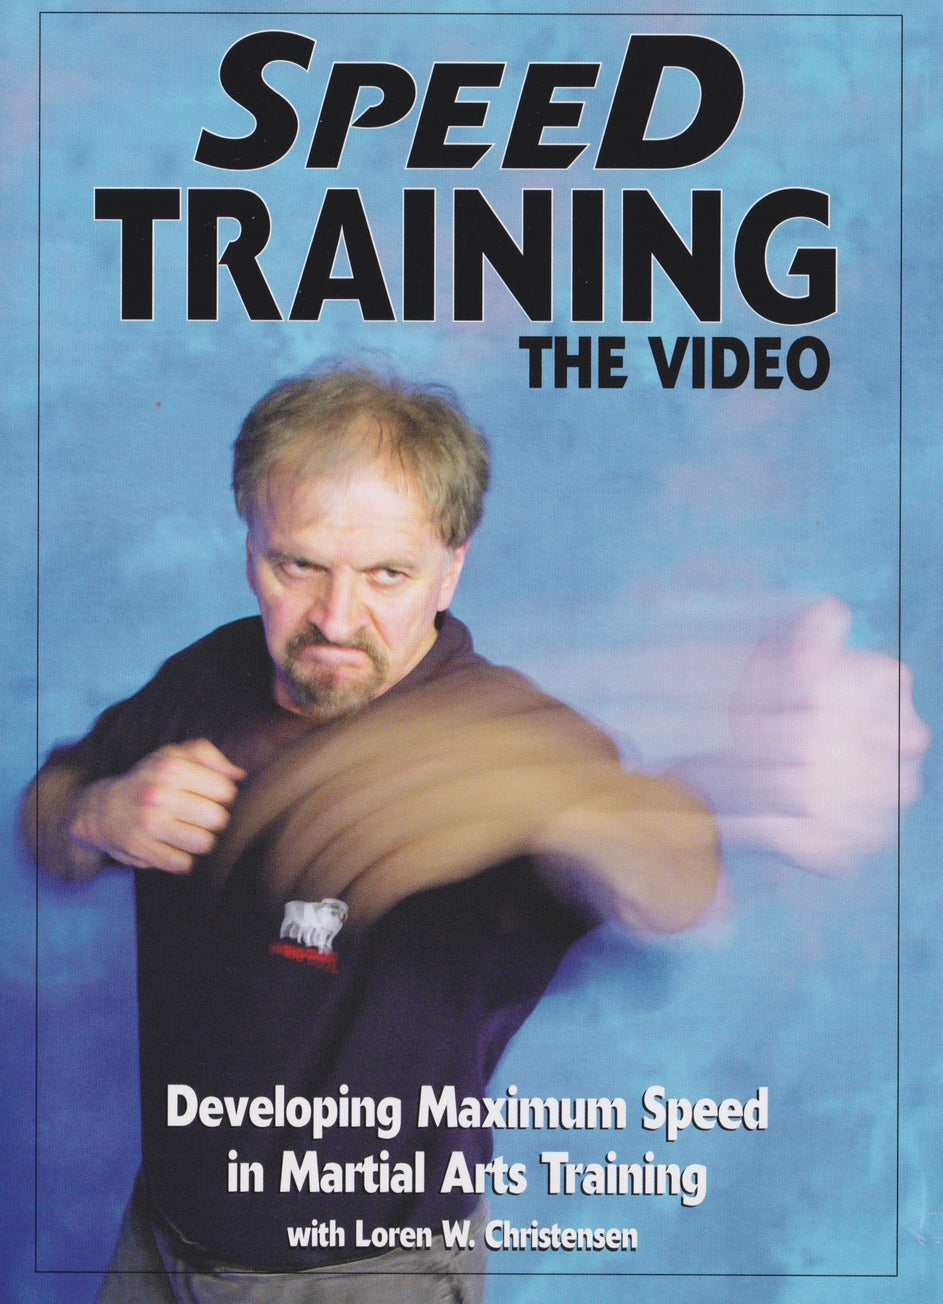 スピード トレーニング: マーシャル アーツ トレーニングで最大速度を高める DVD ローレン クリステンソン (中古)